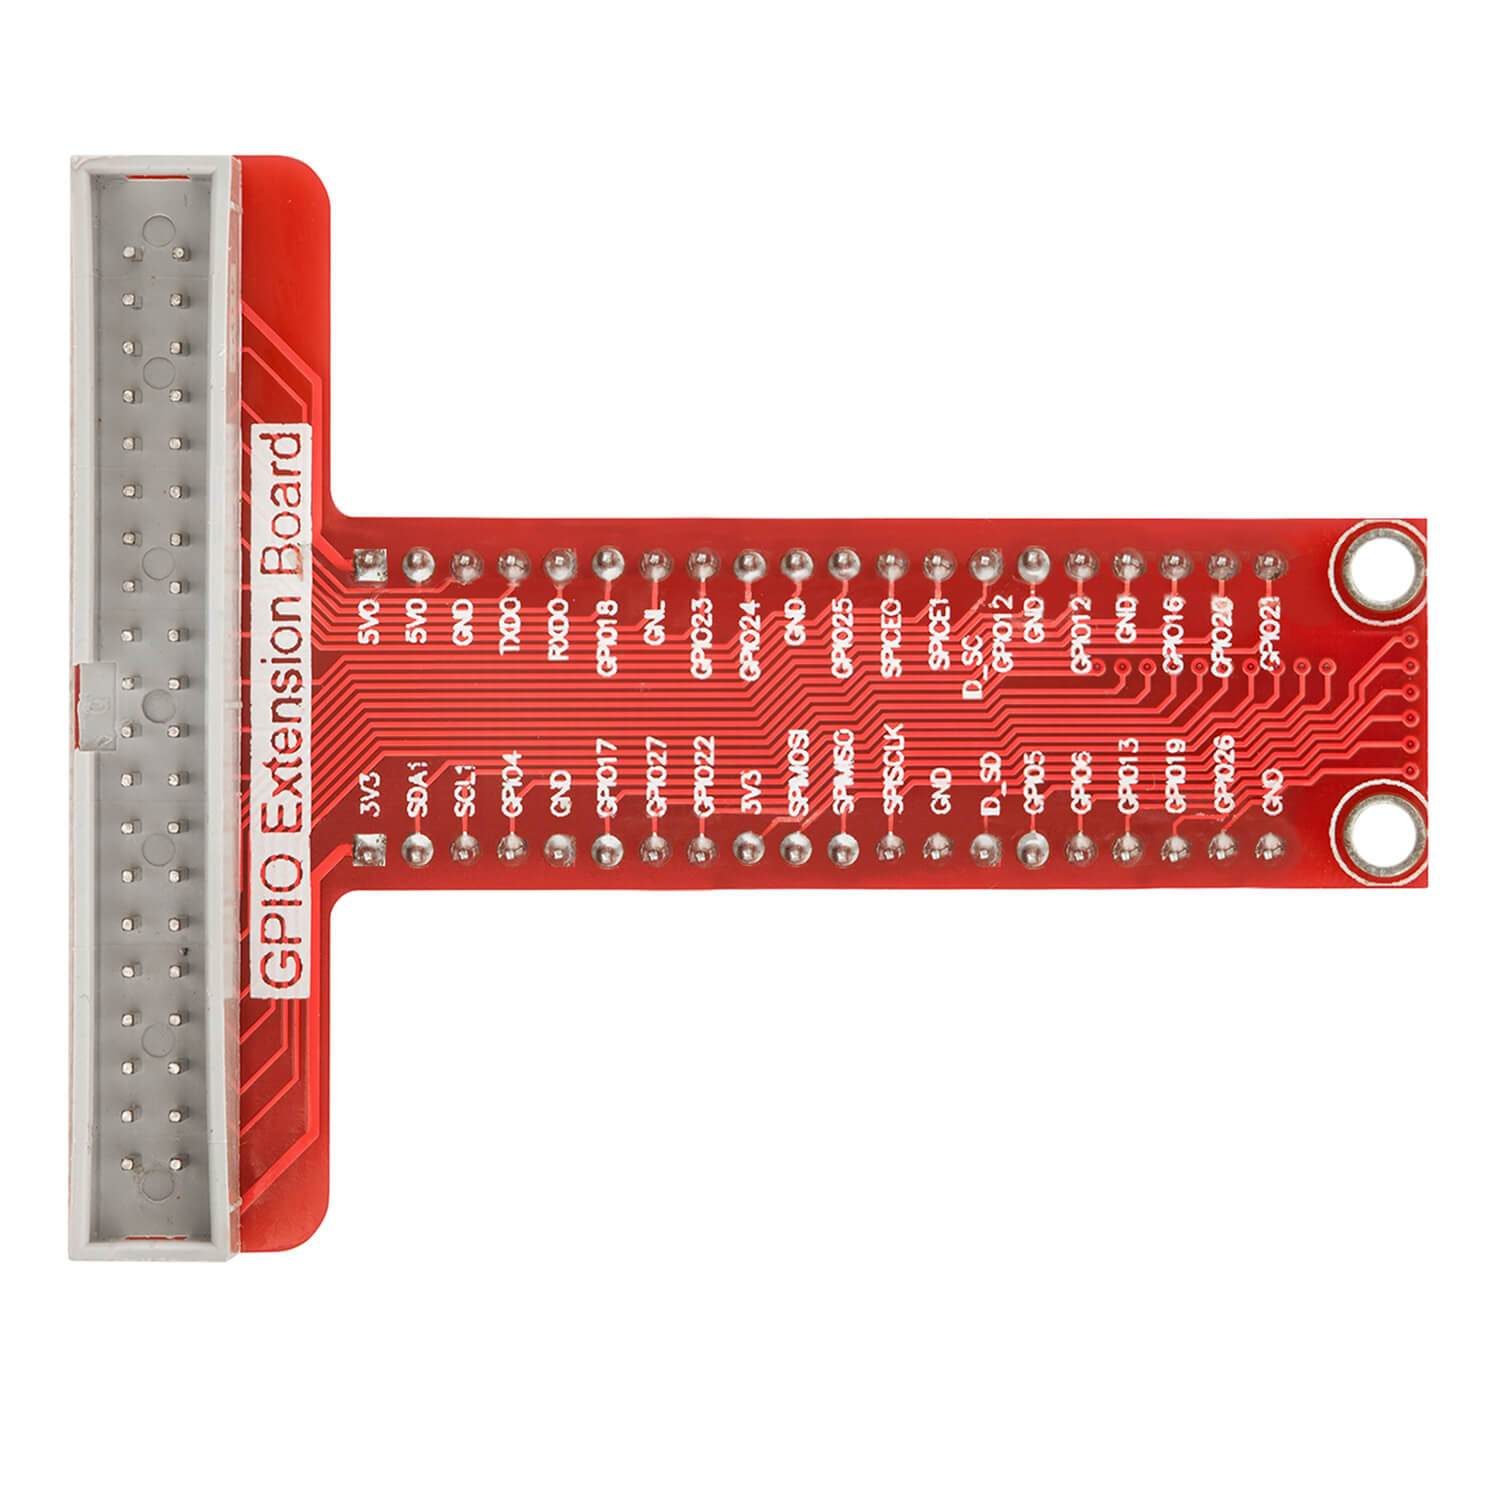 40 Pins GPIO Breakout Board und kompatibles Flachband Ribbon Kabel für Raspberry Pi RaspberryPi Zubehör AZ-Delivery 